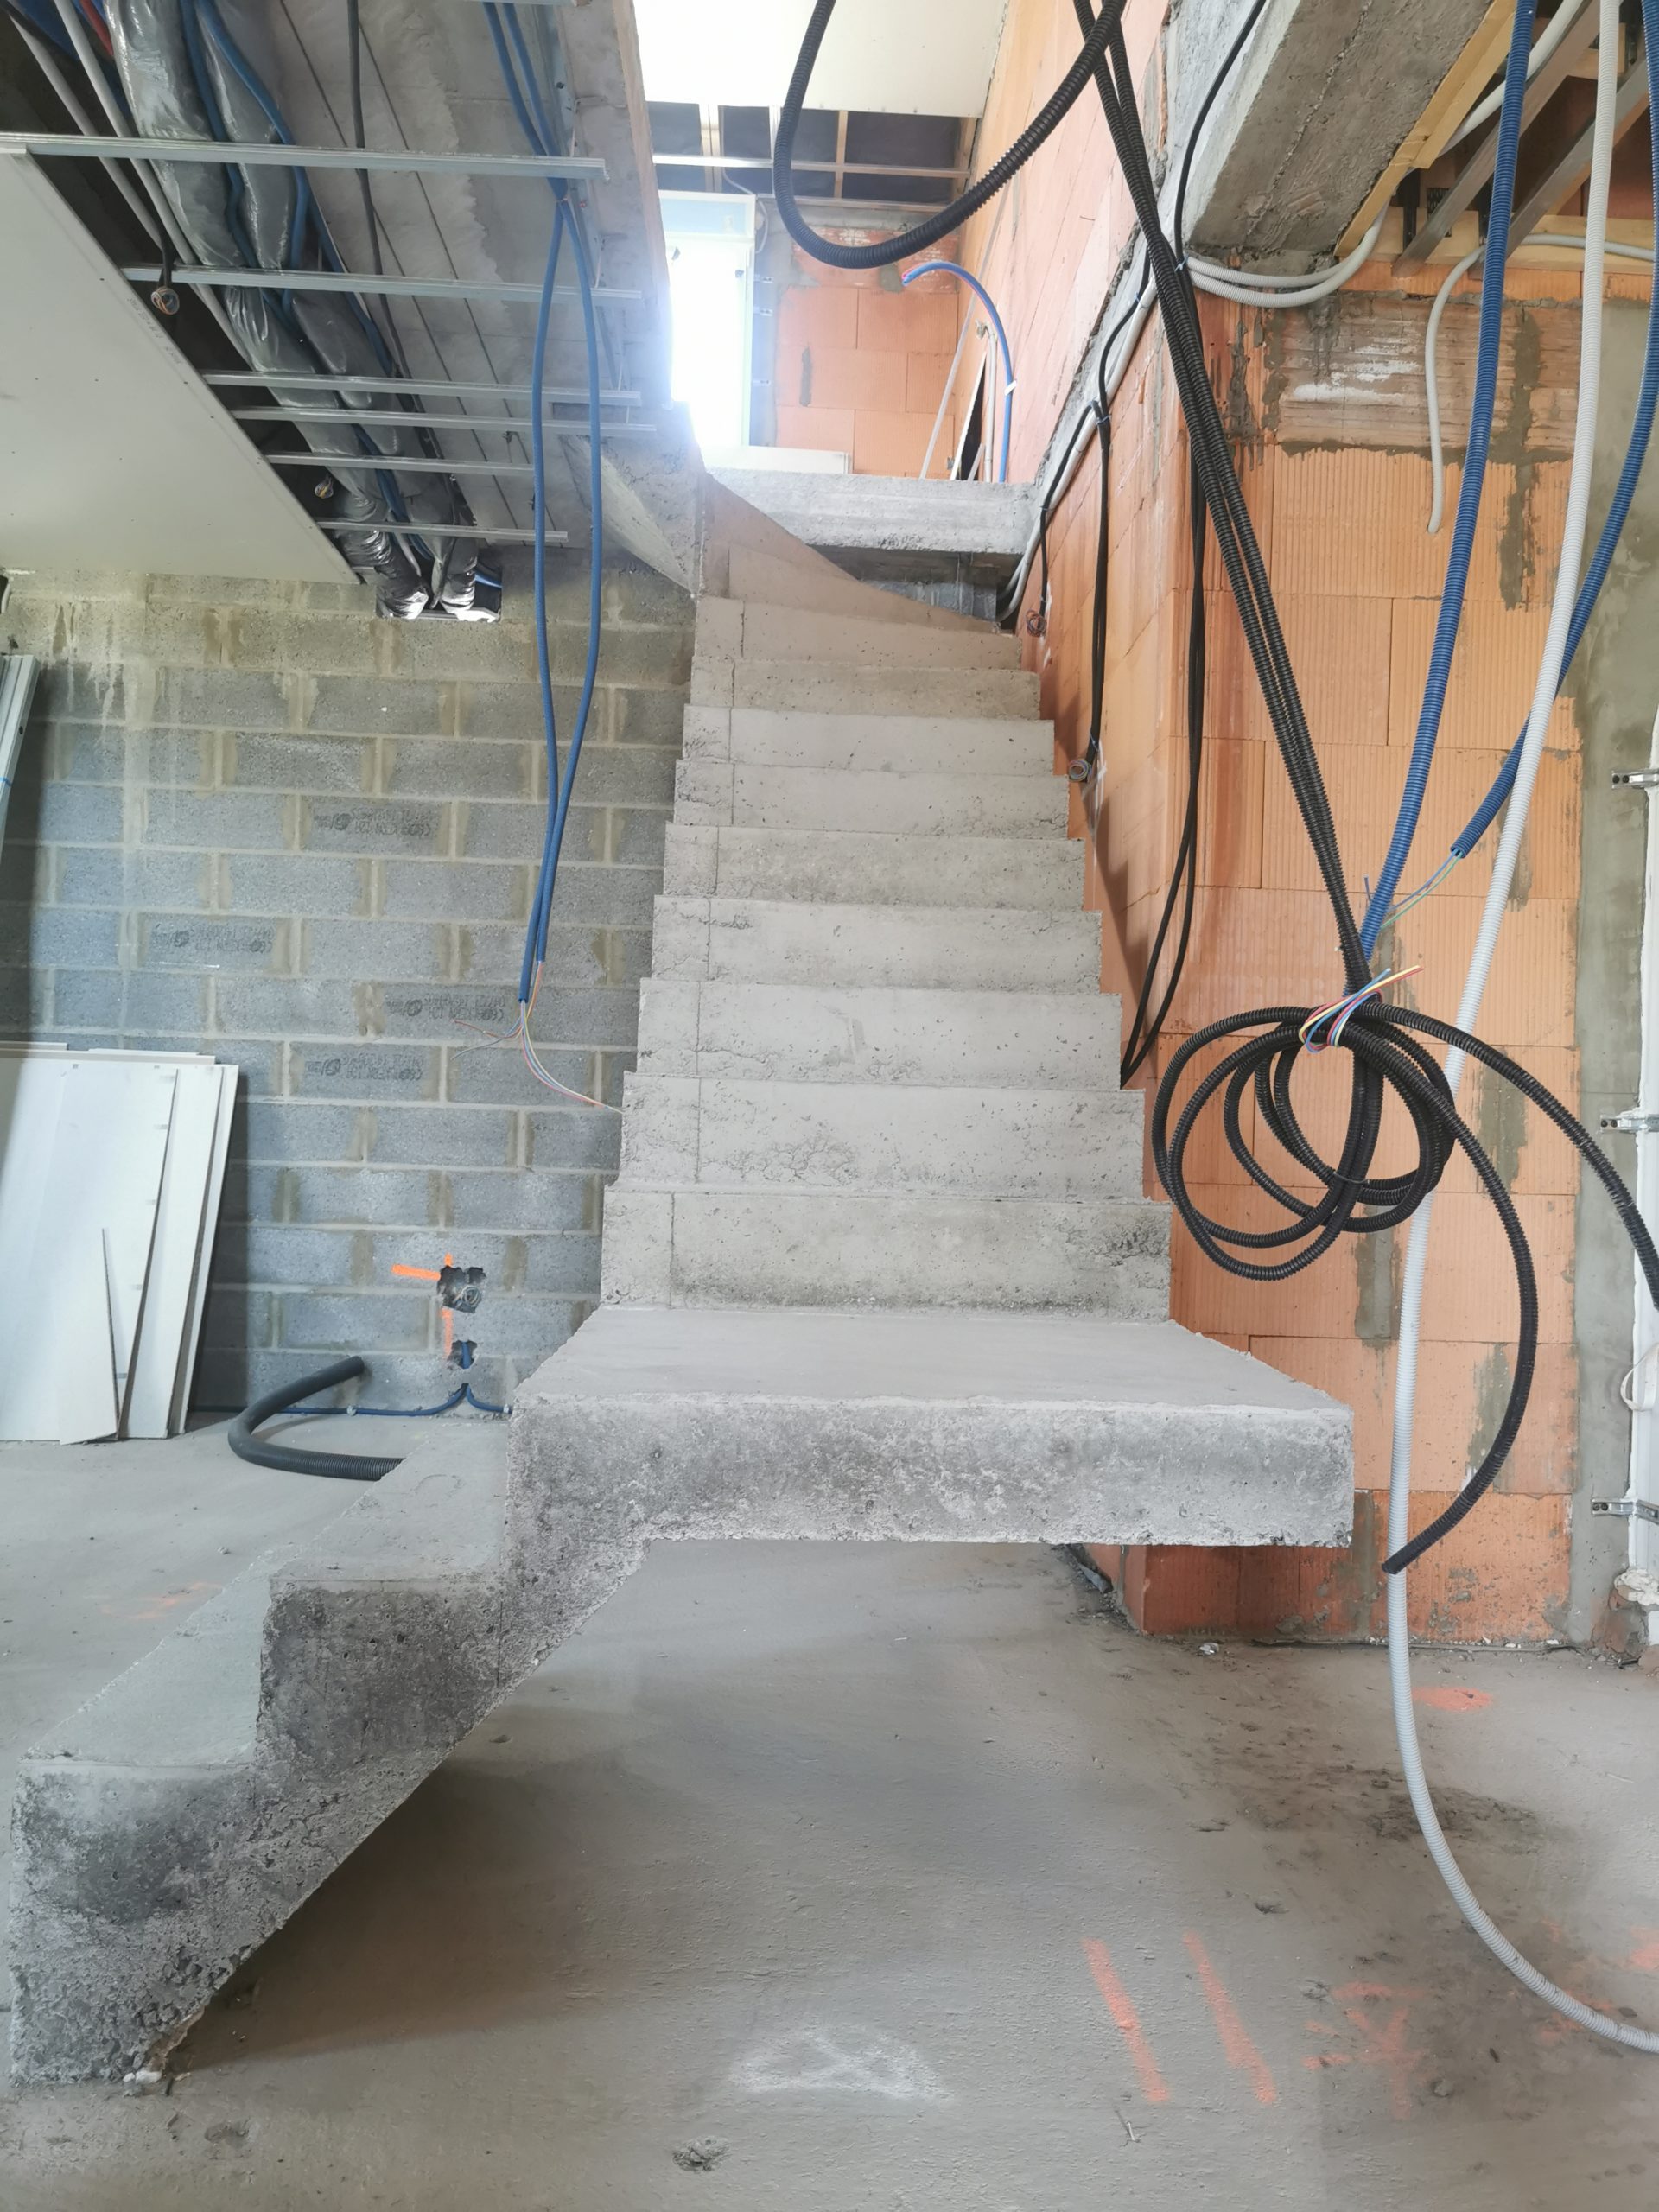 Vue de face d'un escalier intérieur en béton, pour un constructeur.